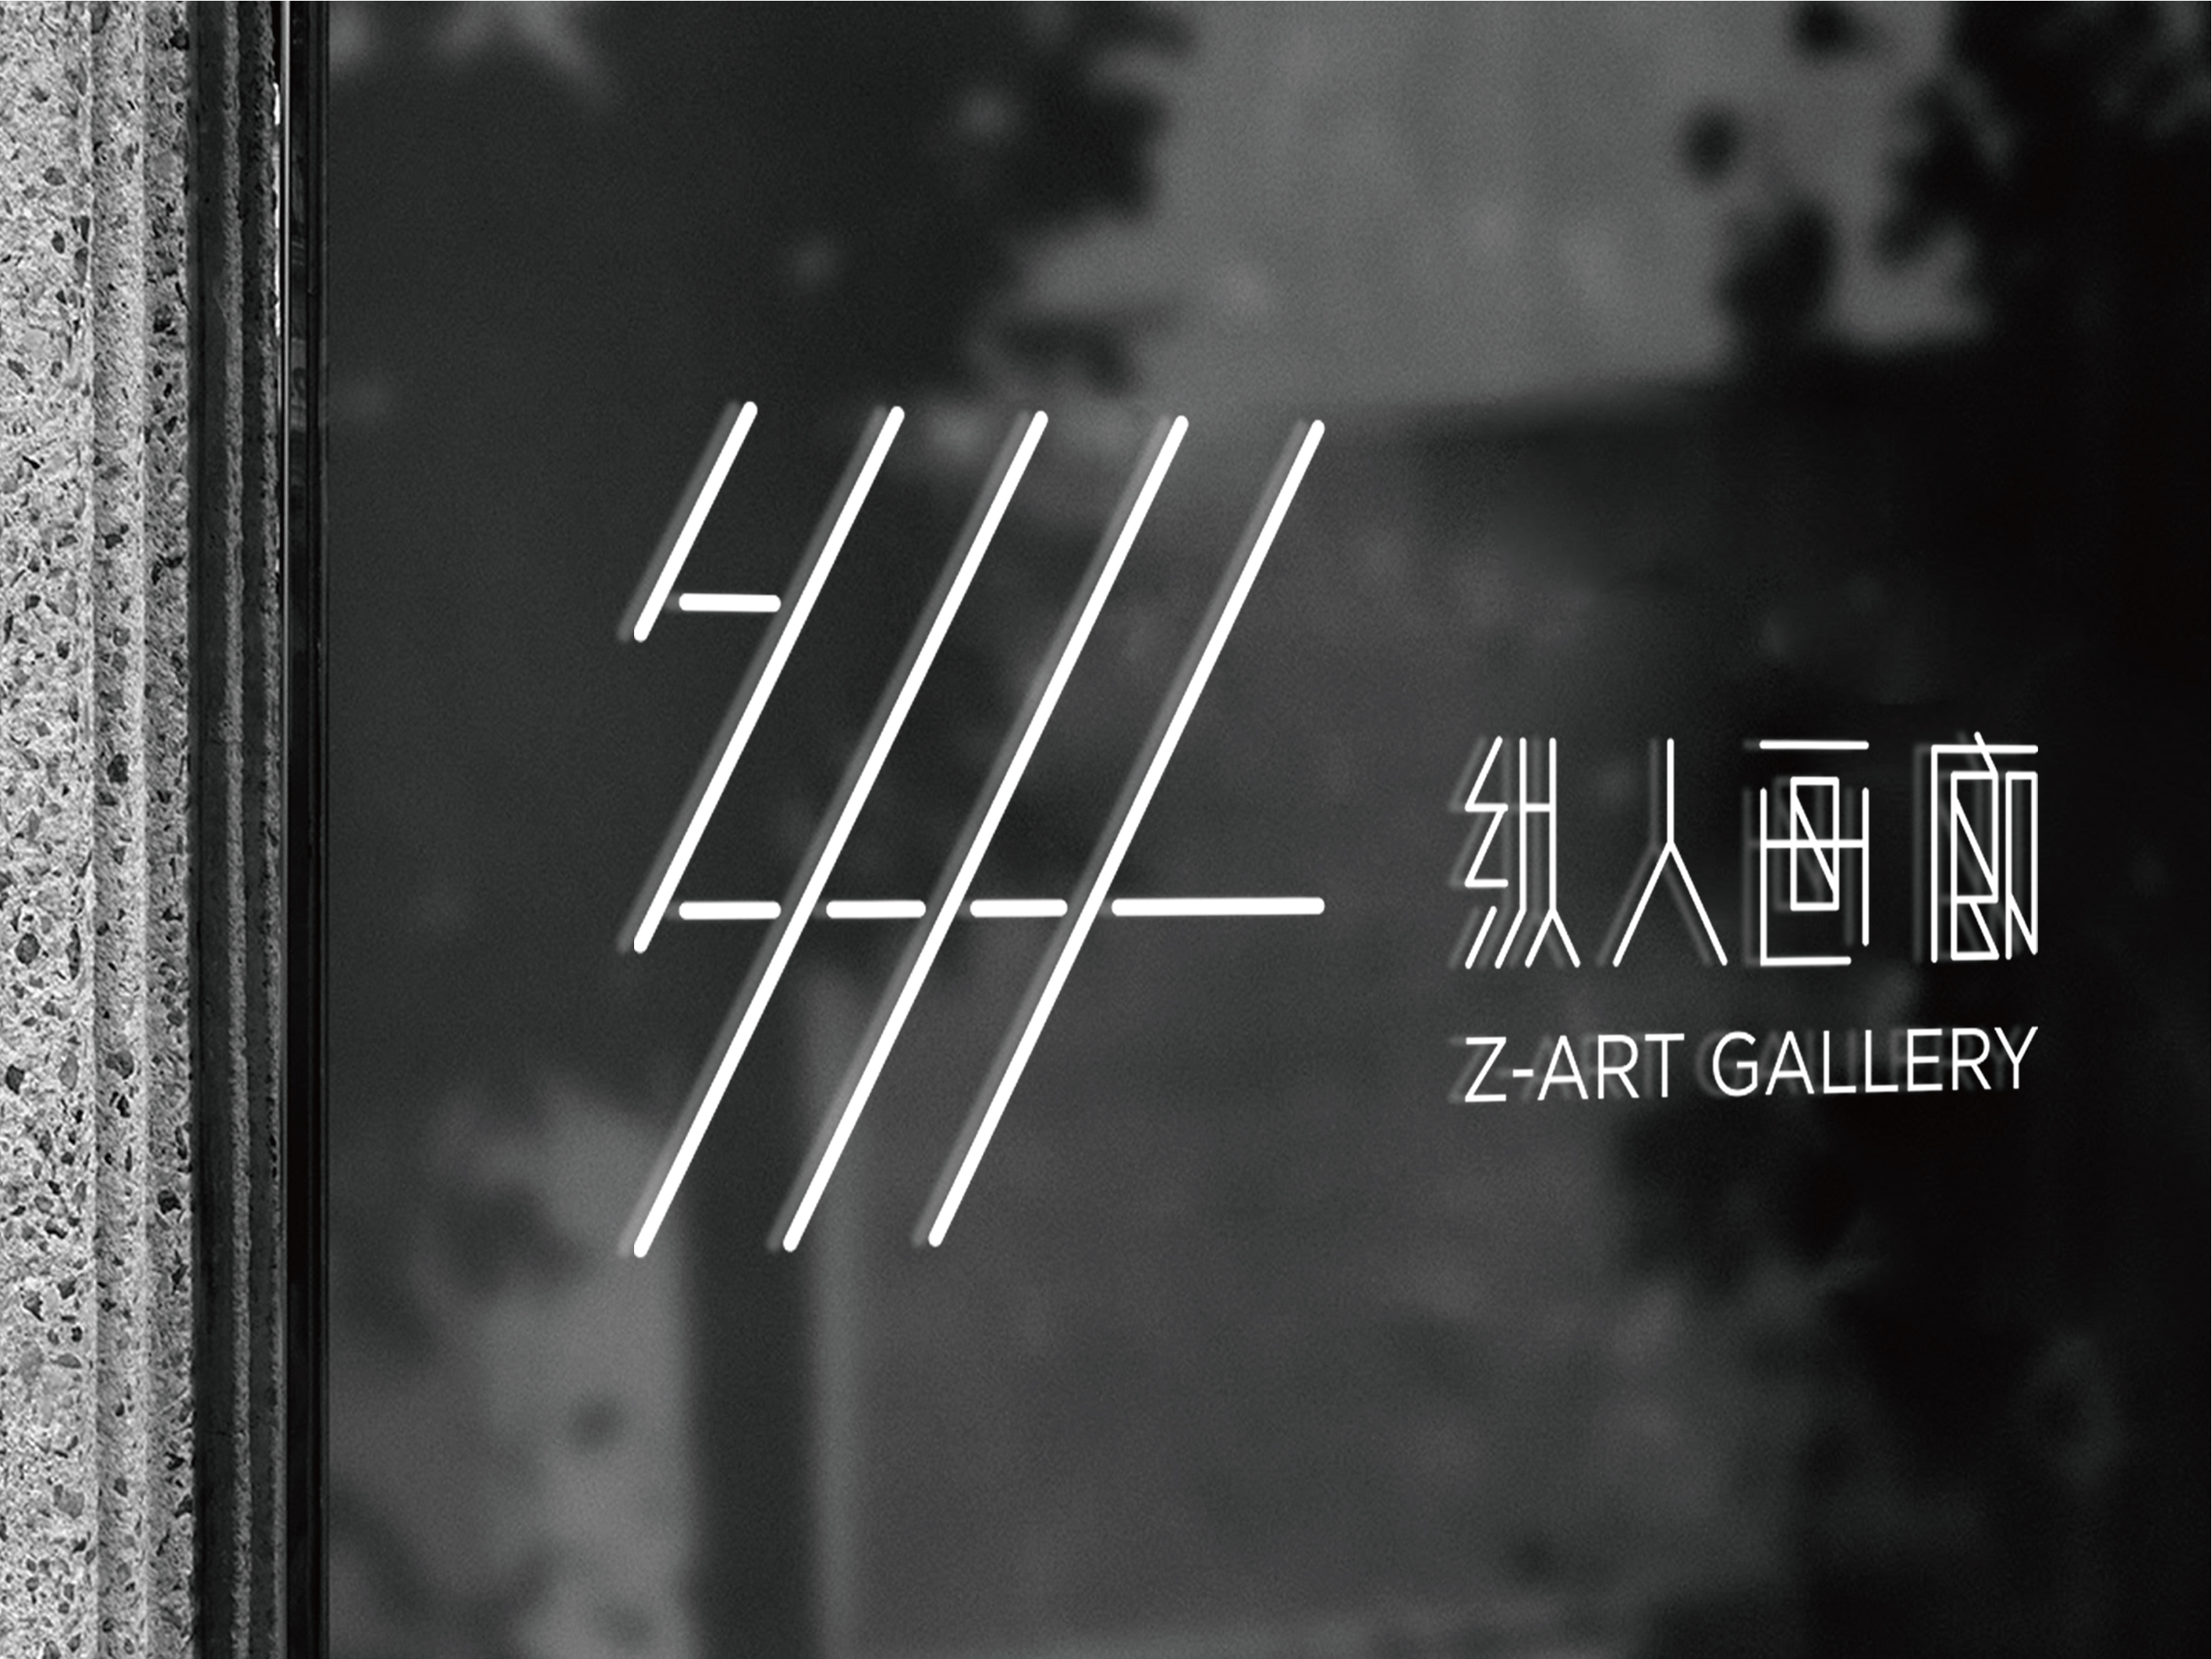 Z-art gallery